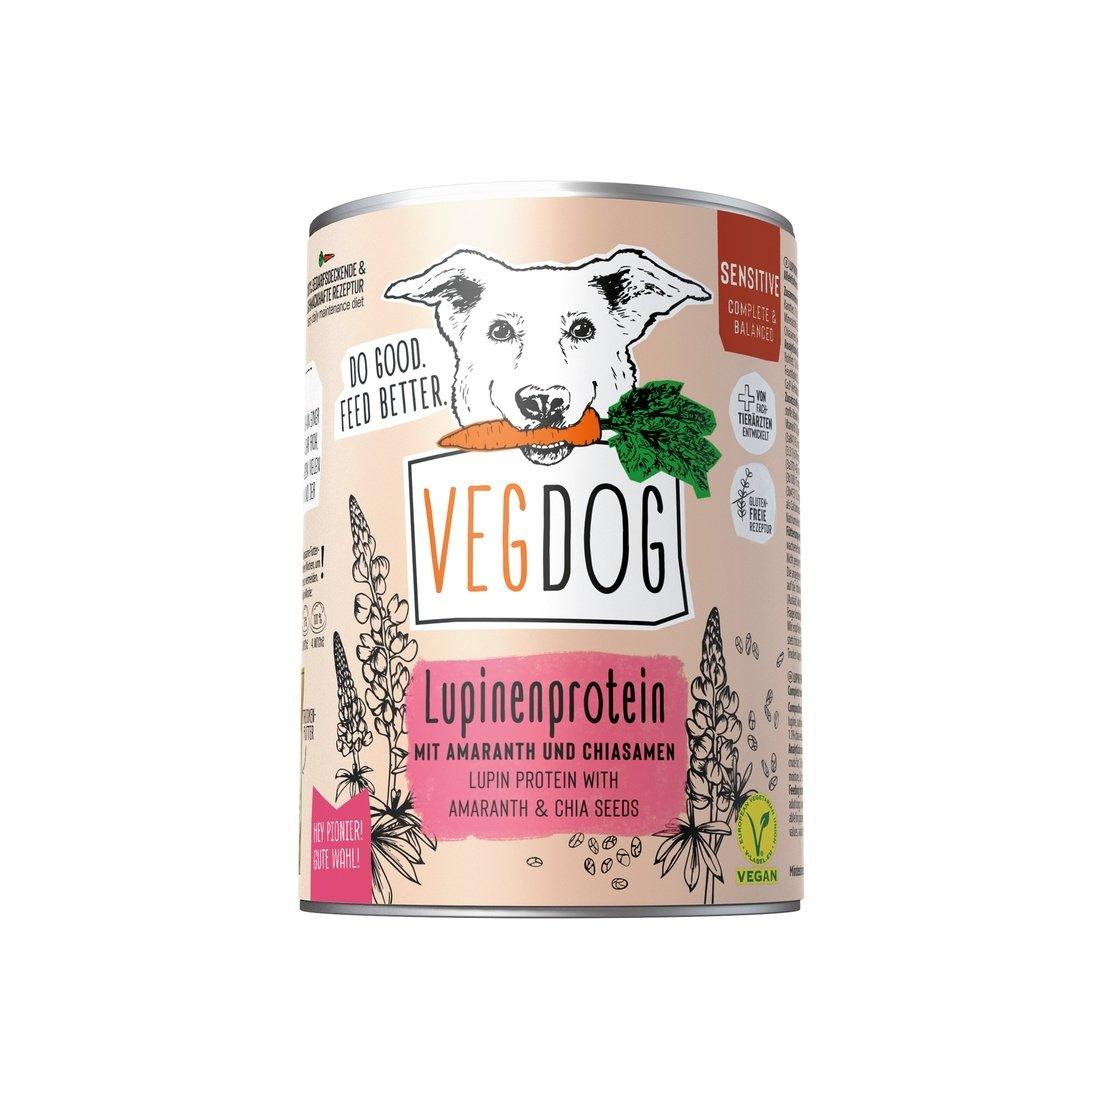 Artikel mit dem Namen VegDog Sensibelchen No1 im Shop von zoo.de , dem Onlineshop für nachhaltiges Hundefutter und Katzenfutter.